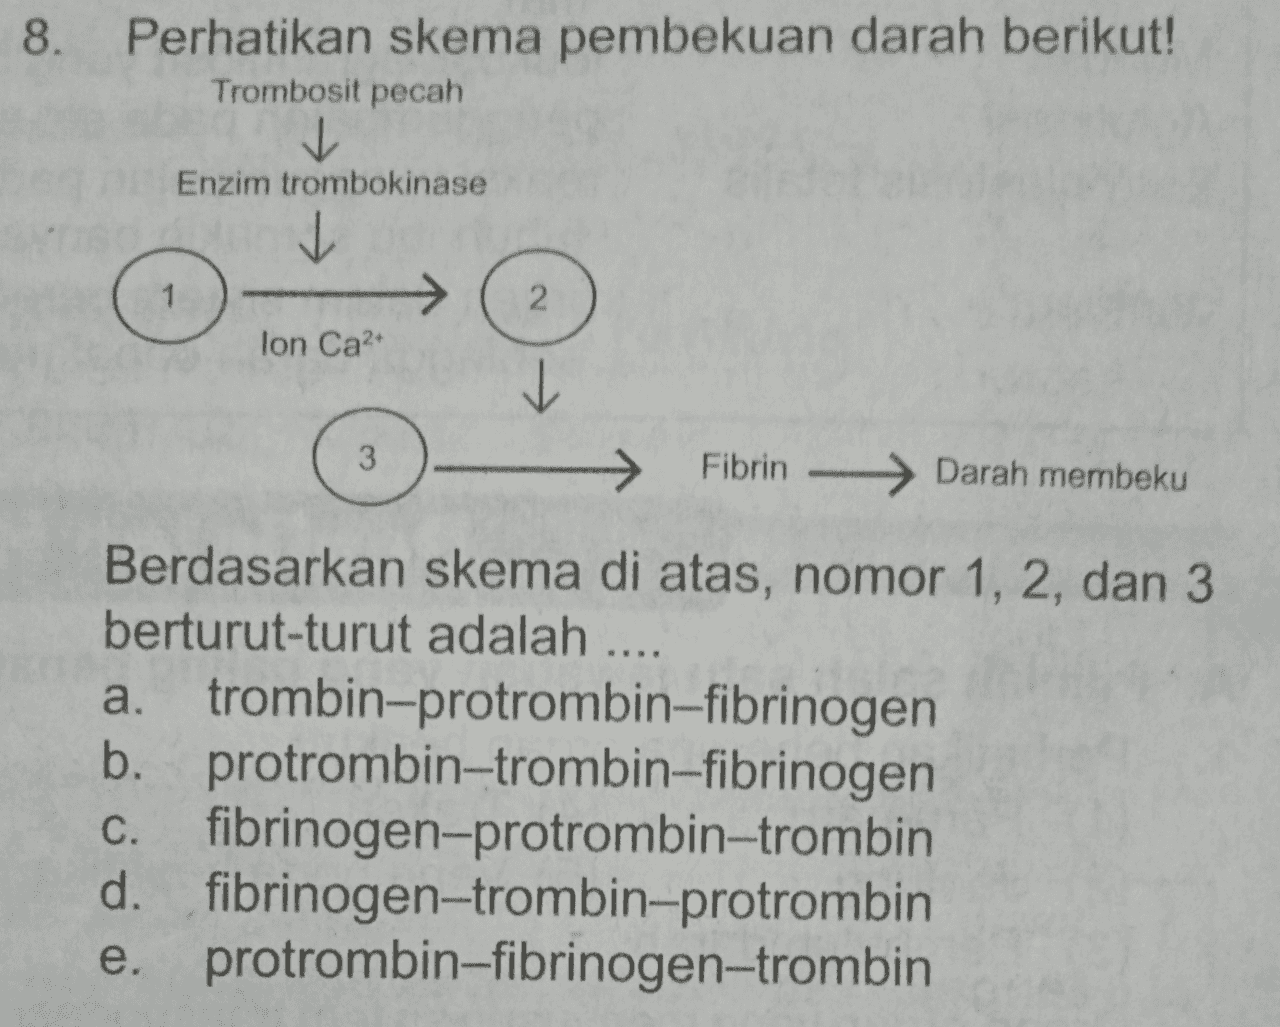 8. Perhatikan skema pembekuan darah berikut! Trombosit pecah Enzim trombokinase 1 2 lon Ca2+ 3 → Fibrin -> Darah membeku Berdasarkan skema di atas, nomor 1, 2, dan 3 berturut-turut adalah .. a. trombin-protrombin-fibrinogen a. b. protrombin-trombin-fibrinogen C. fibrinogen-protrombin-trombin d. fibrinogen-trombin-protrombin e. protrombin-fibrinogen-trombin e 